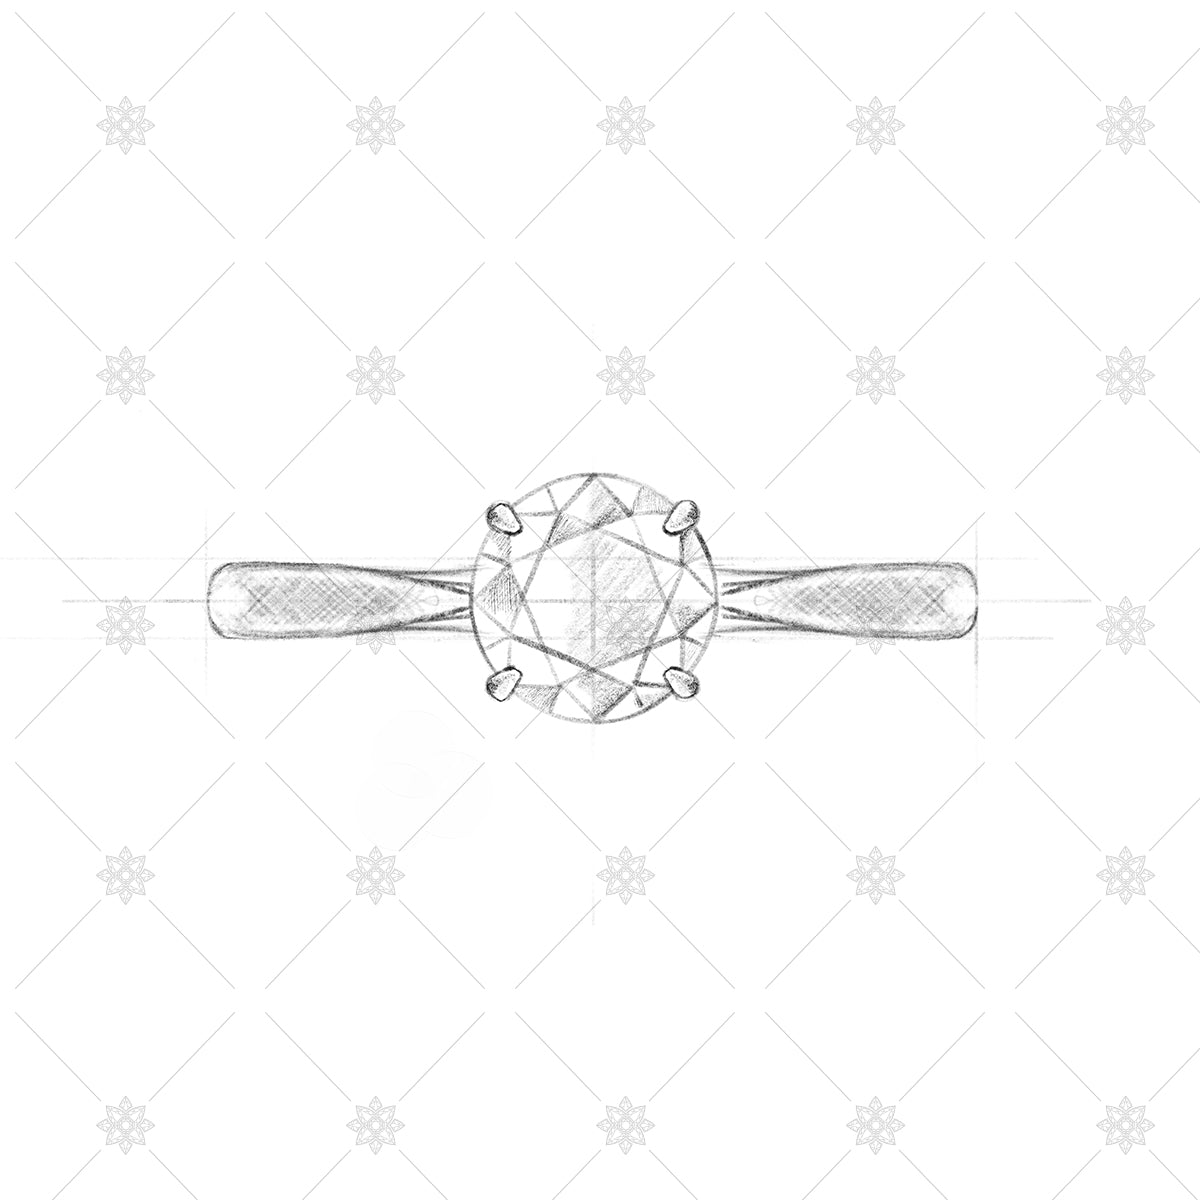 Diamond Ring Sketch - Solitaire pencil sketch